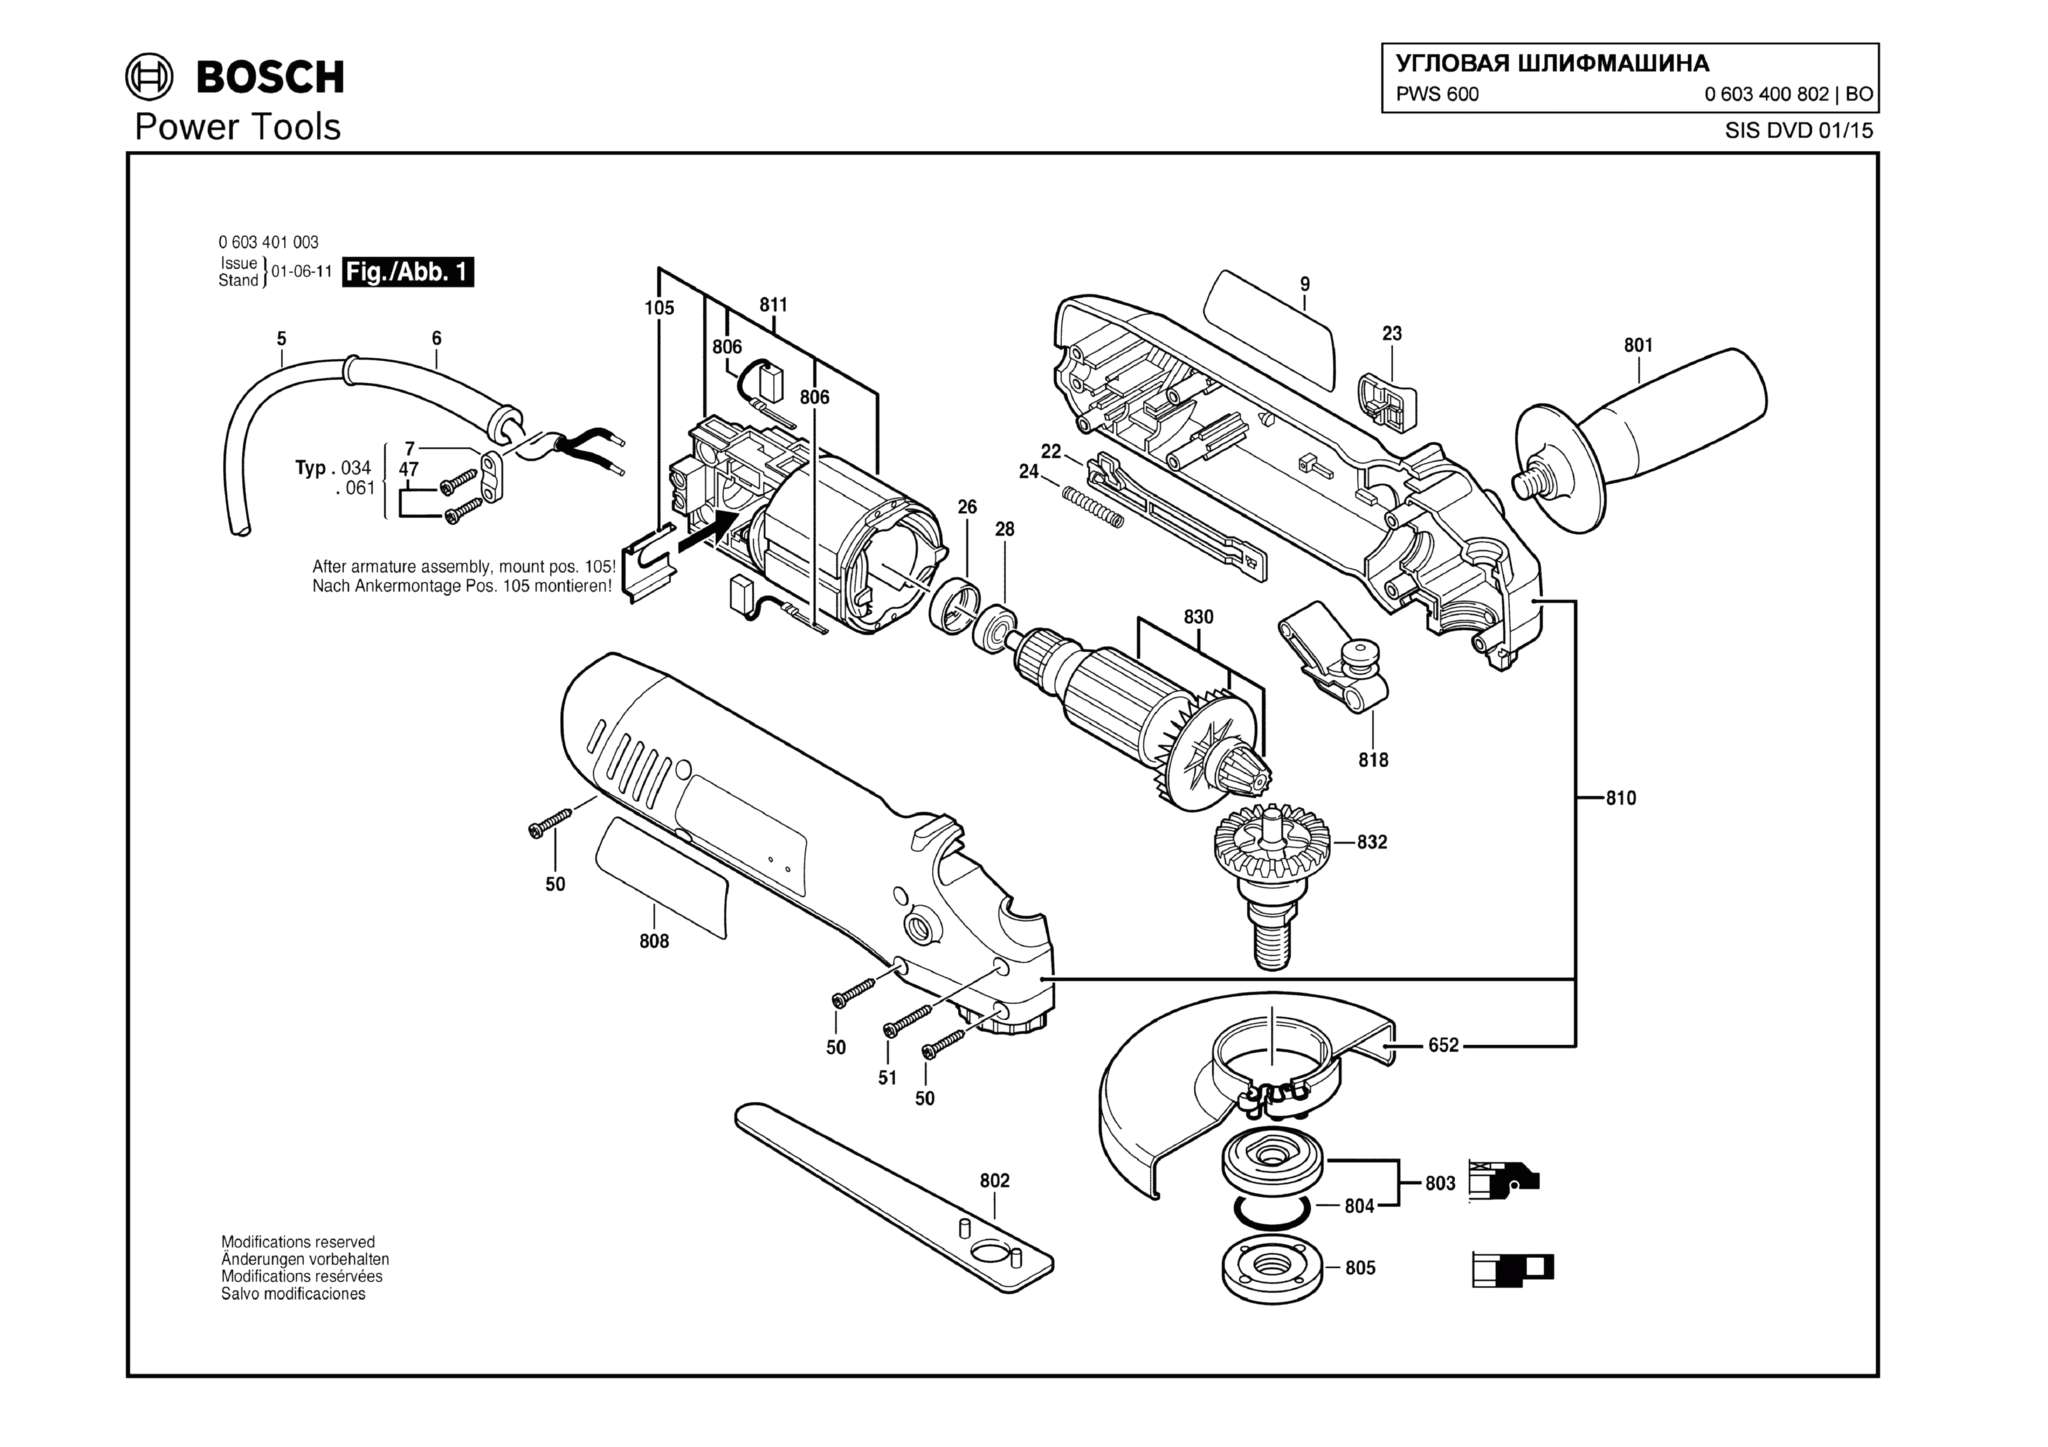 Запчасти, схема и деталировка Bosch PWS 600 (ТИП 0603400802)